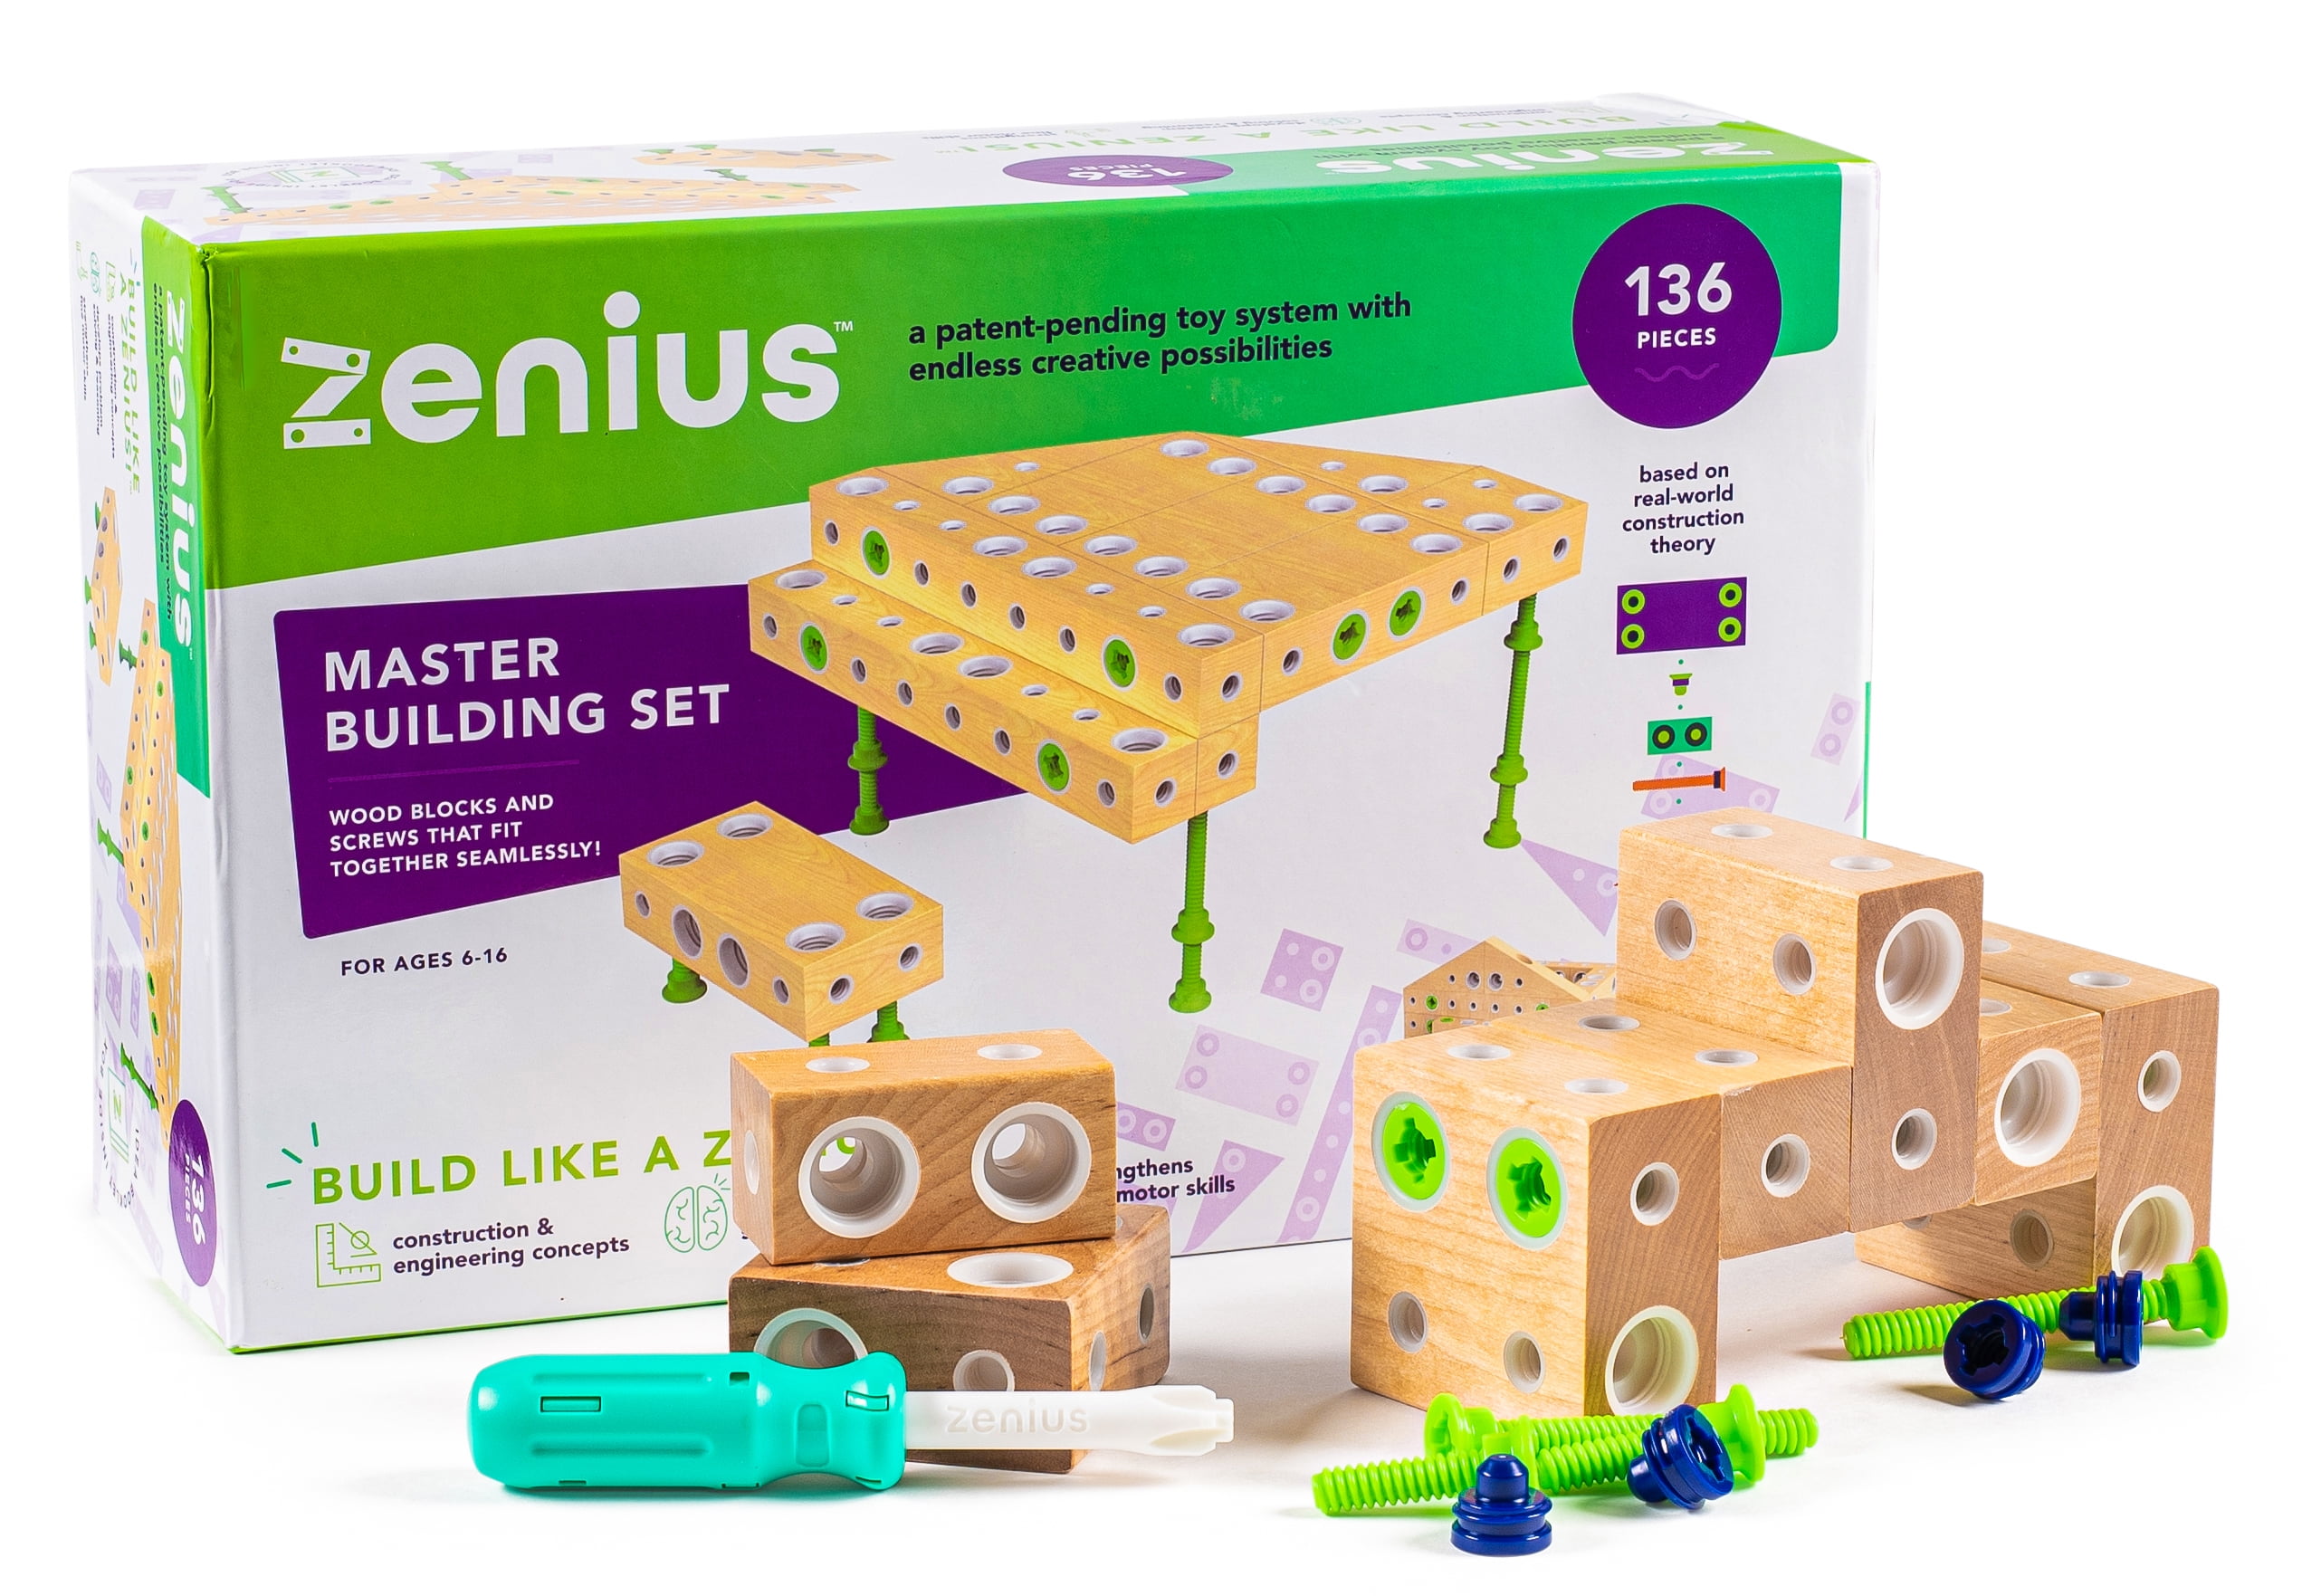 Details about   Kids Wooden Building Blocks Set Create Imagine Educational Construct Kit 150pcs 